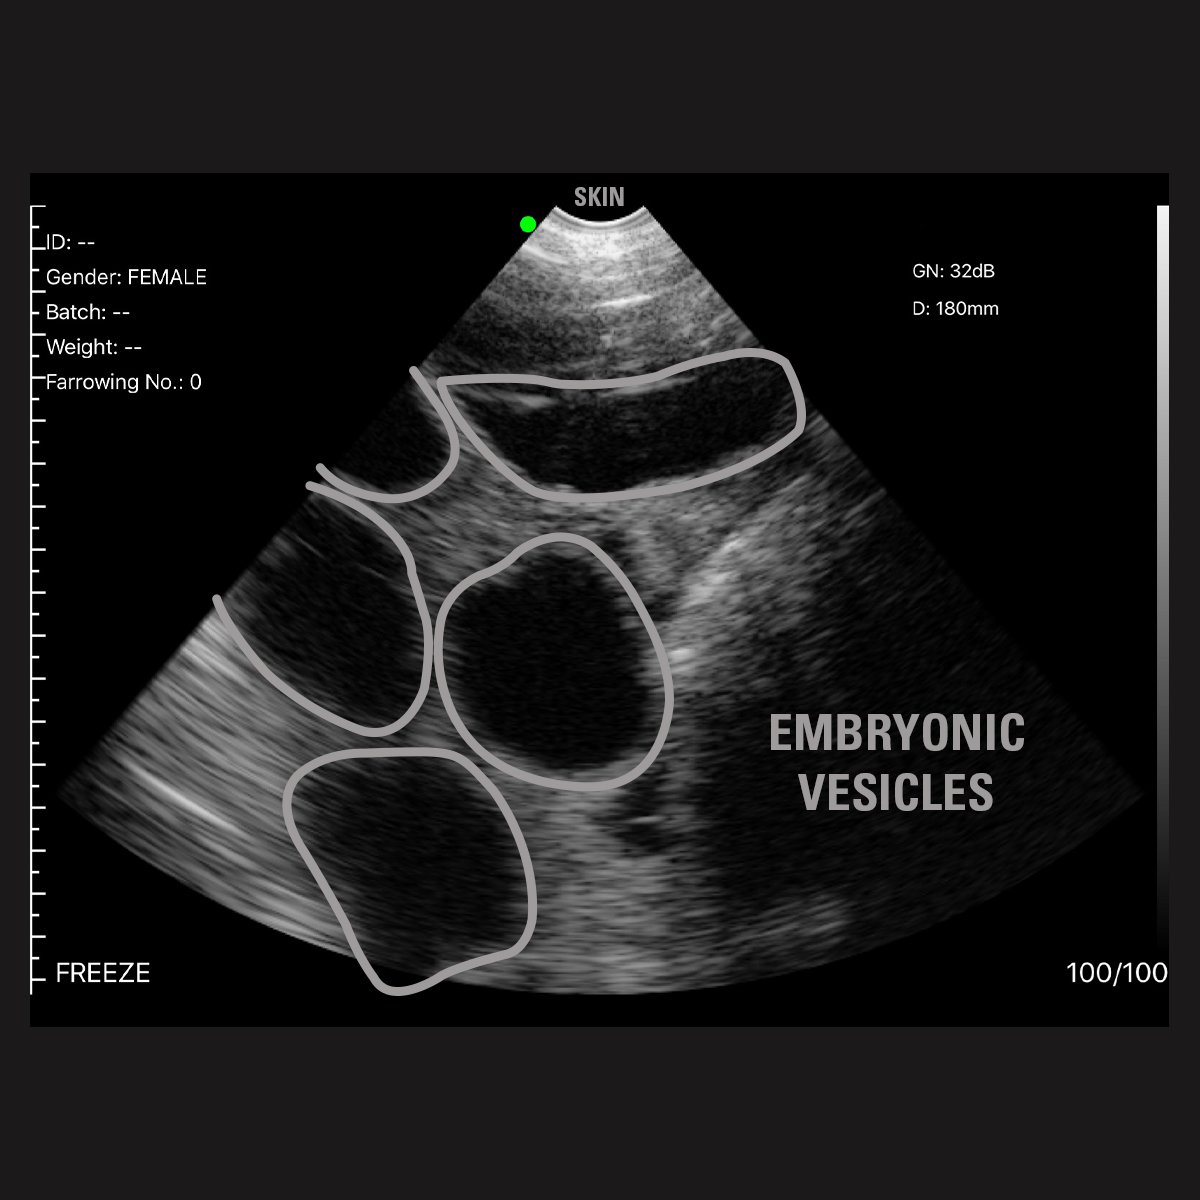 Ultrasound - Image 2 - Labeled - Facebook